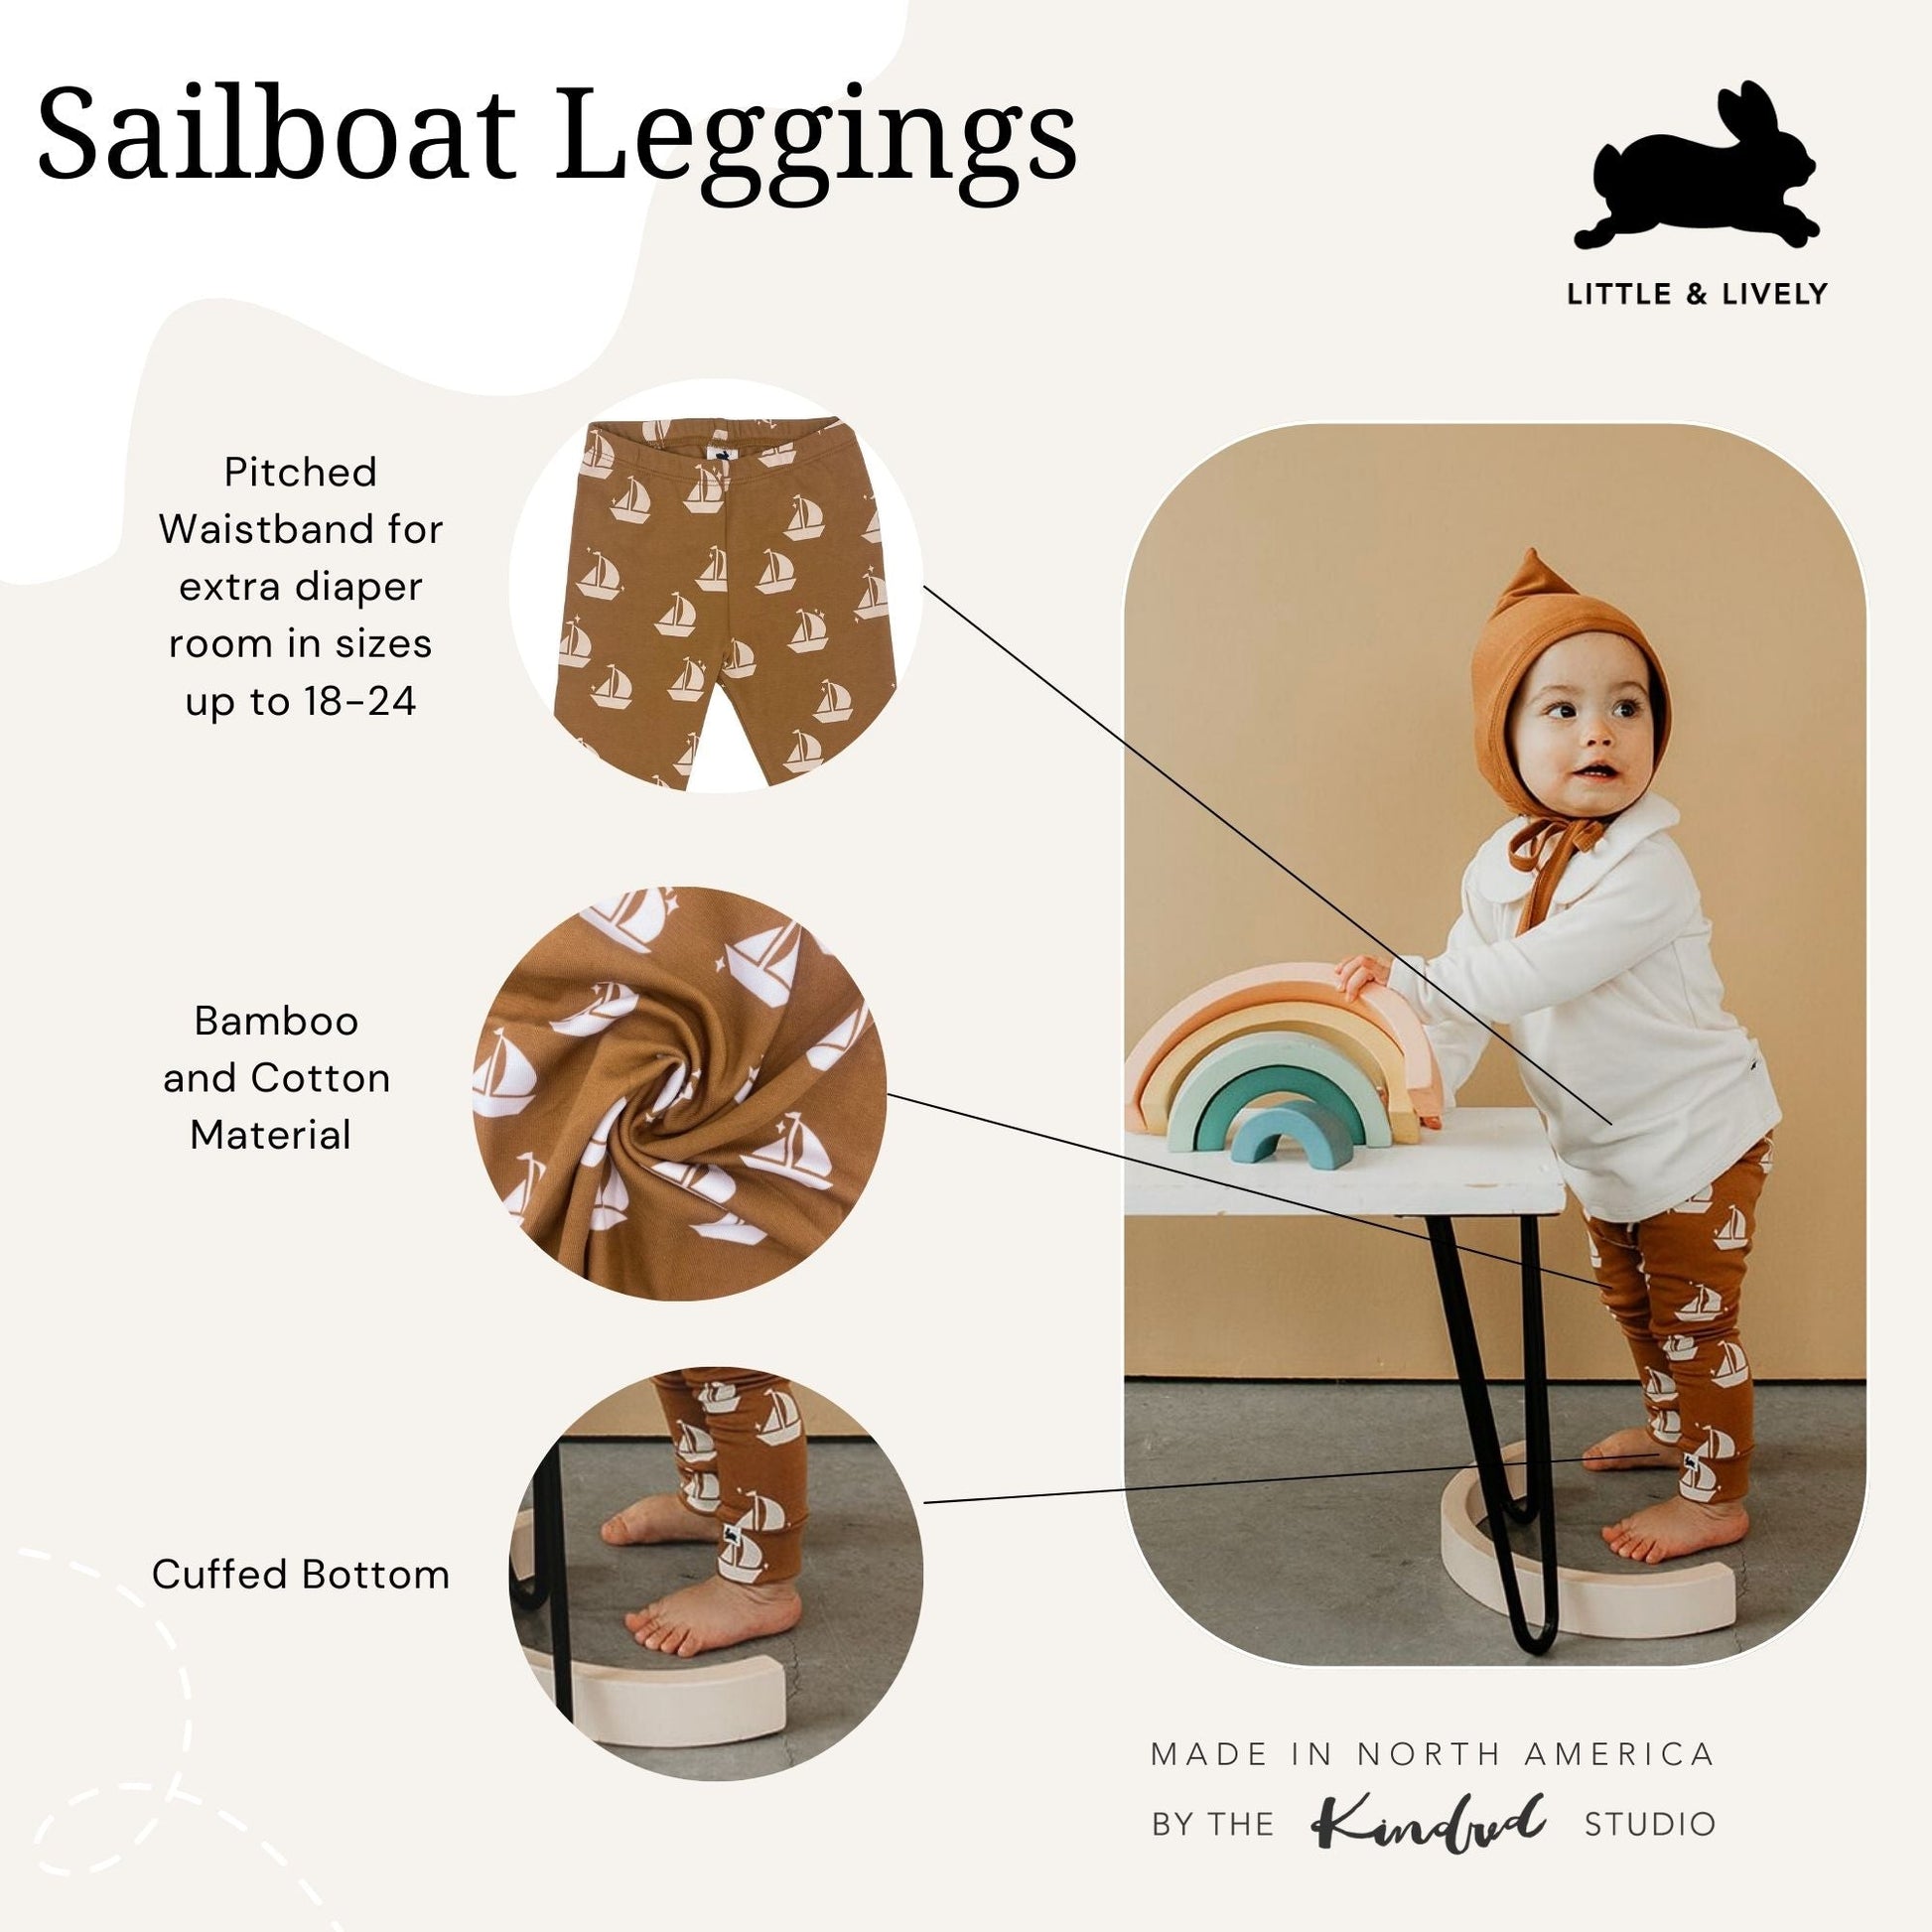 Leggings | Sailboats